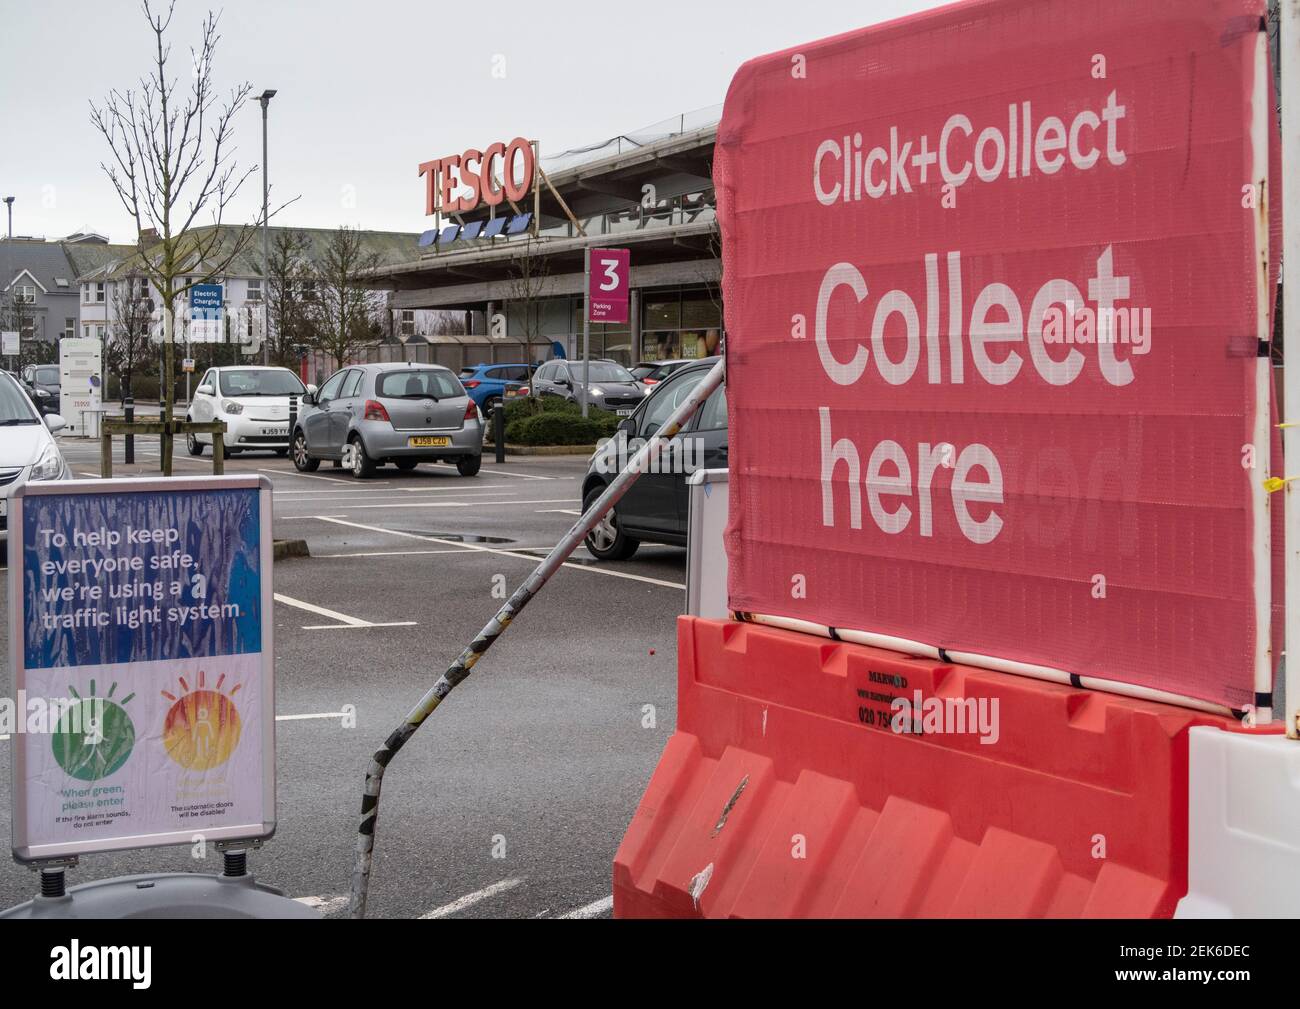 Klicken und sammeln in einem Tesco Supermarkt in Seaton, Devon. Während der Covid-Pandemie waren die Systeme zur Lieferung und Abholung von Lebensmitteln sehr gefragt. Stockfoto